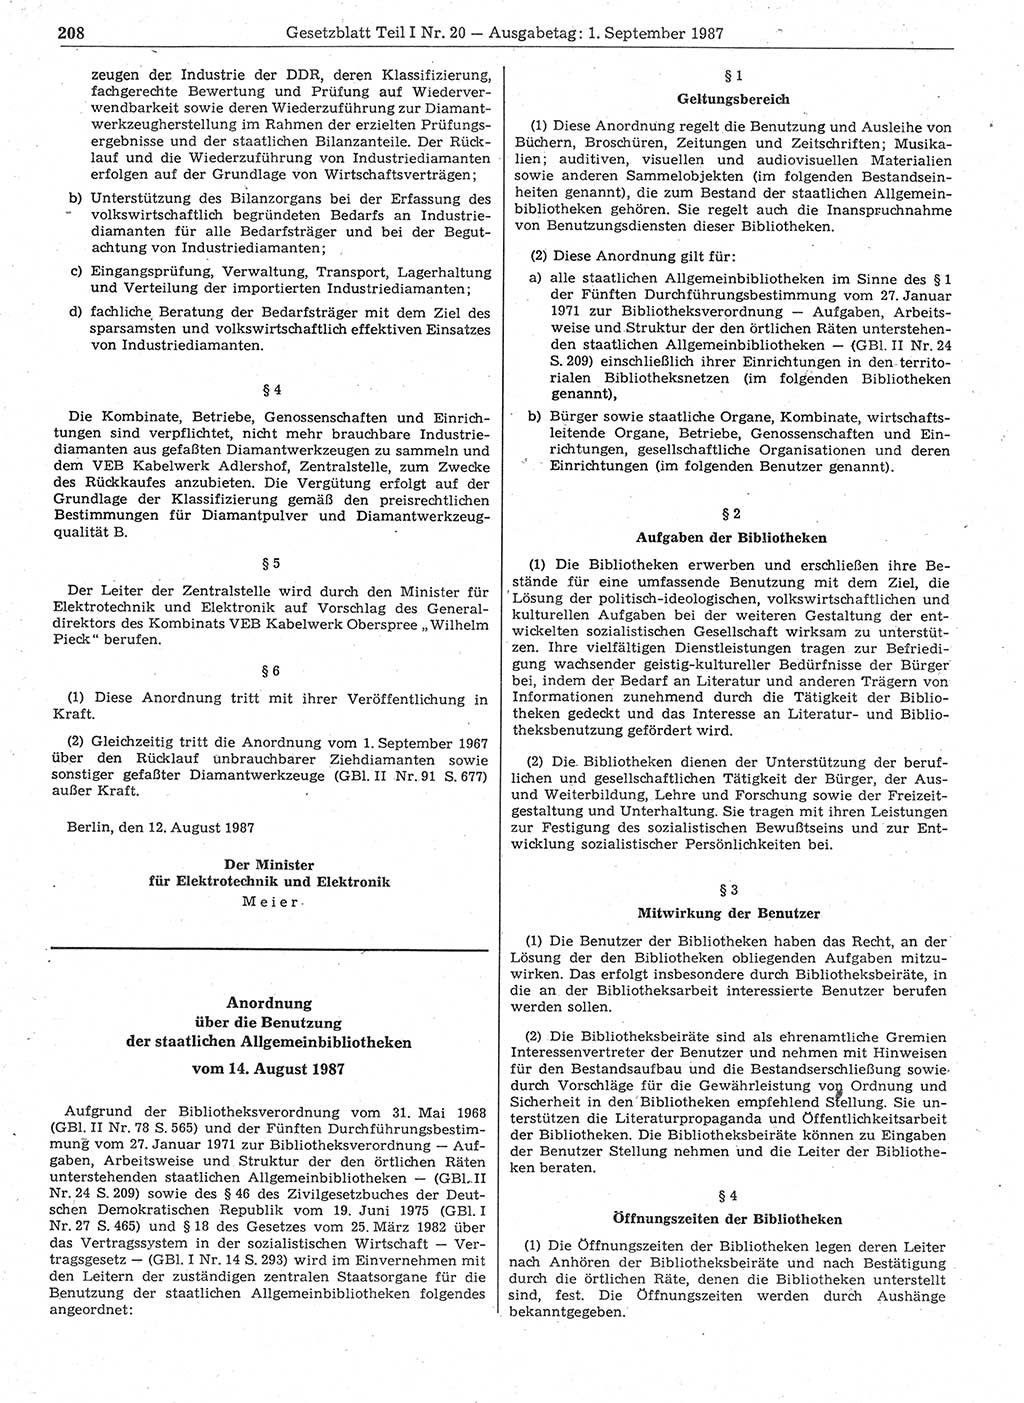 Gesetzblatt (GBl.) der Deutschen Demokratischen Republik (DDR) Teil Ⅰ 1987, Seite 208 (GBl. DDR Ⅰ 1987, S. 208)